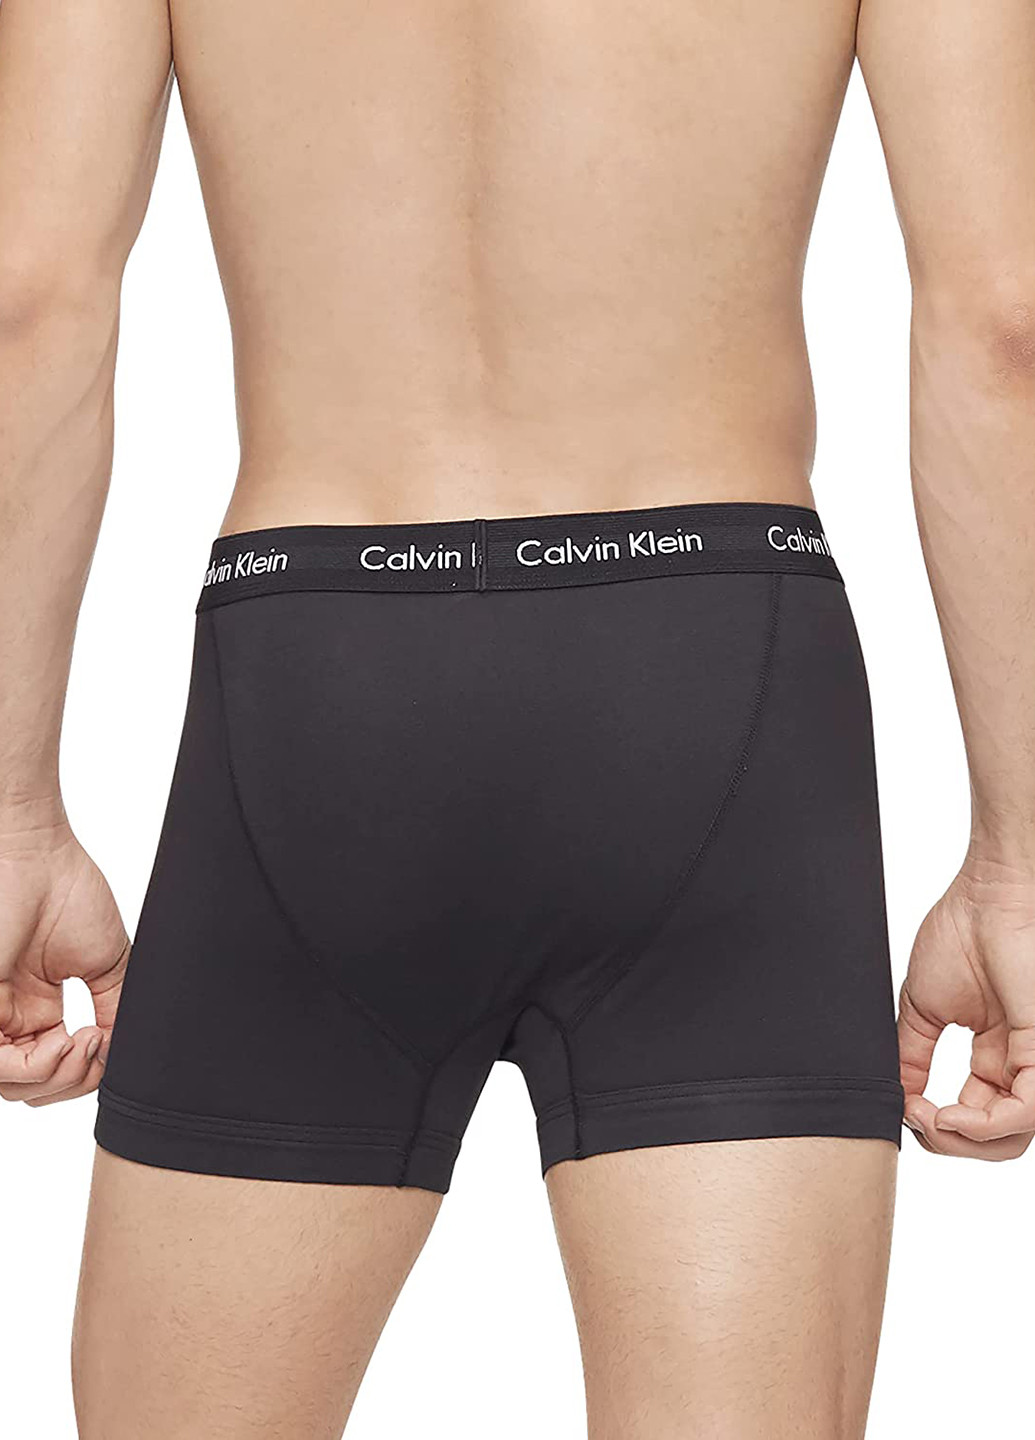 Трусы (3 шт.) Calvin Klein боксеры логотипы комбинированные домашние трикотаж, хлопок